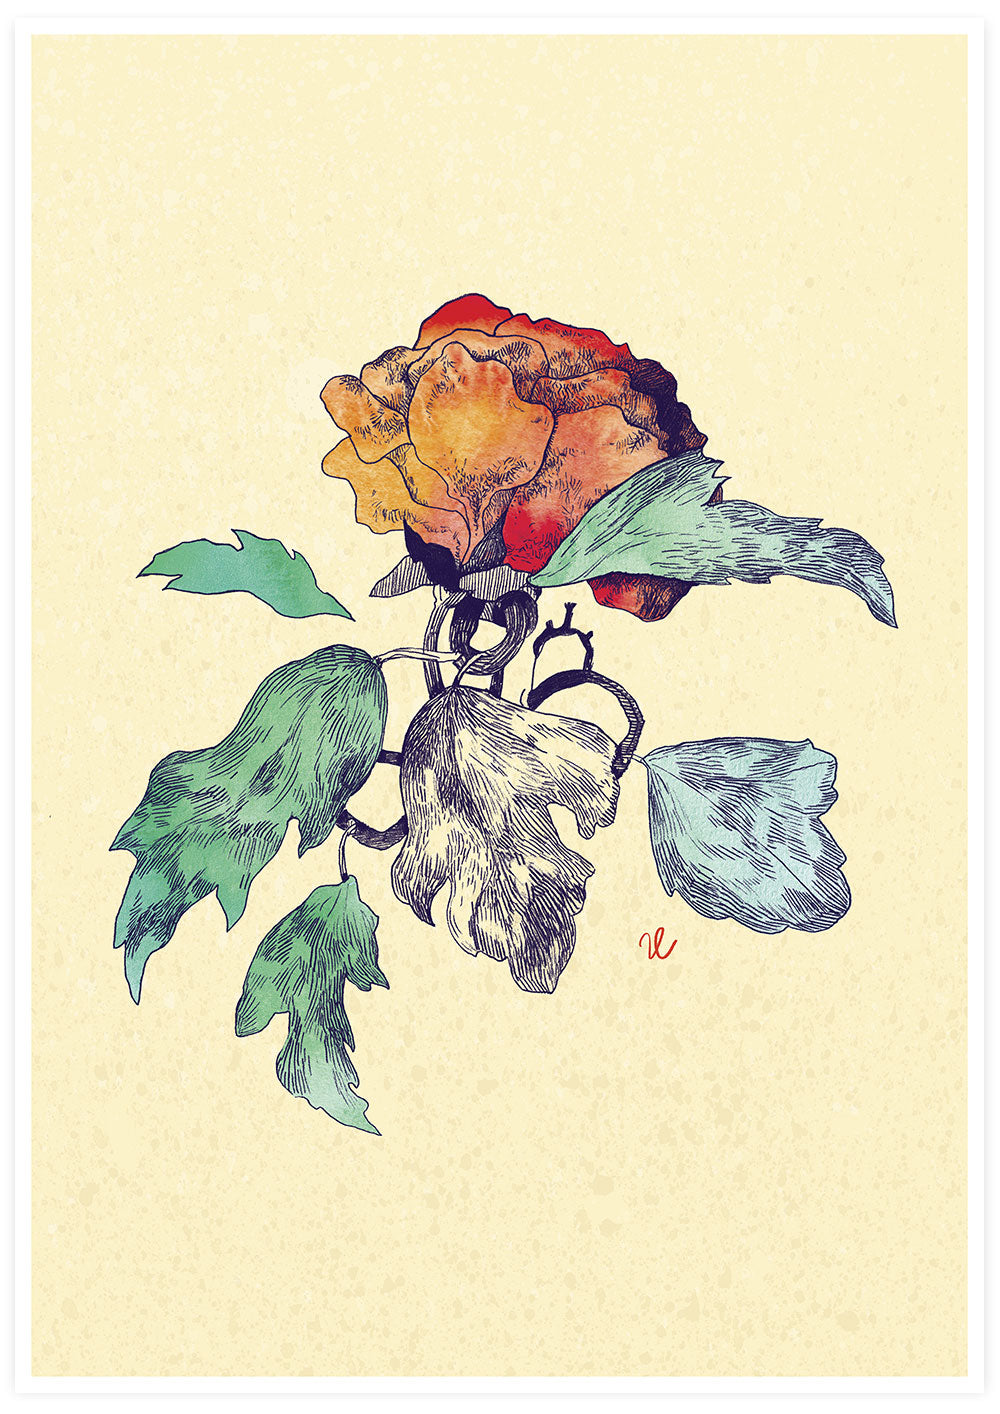 Sunset Rose Flower Poster